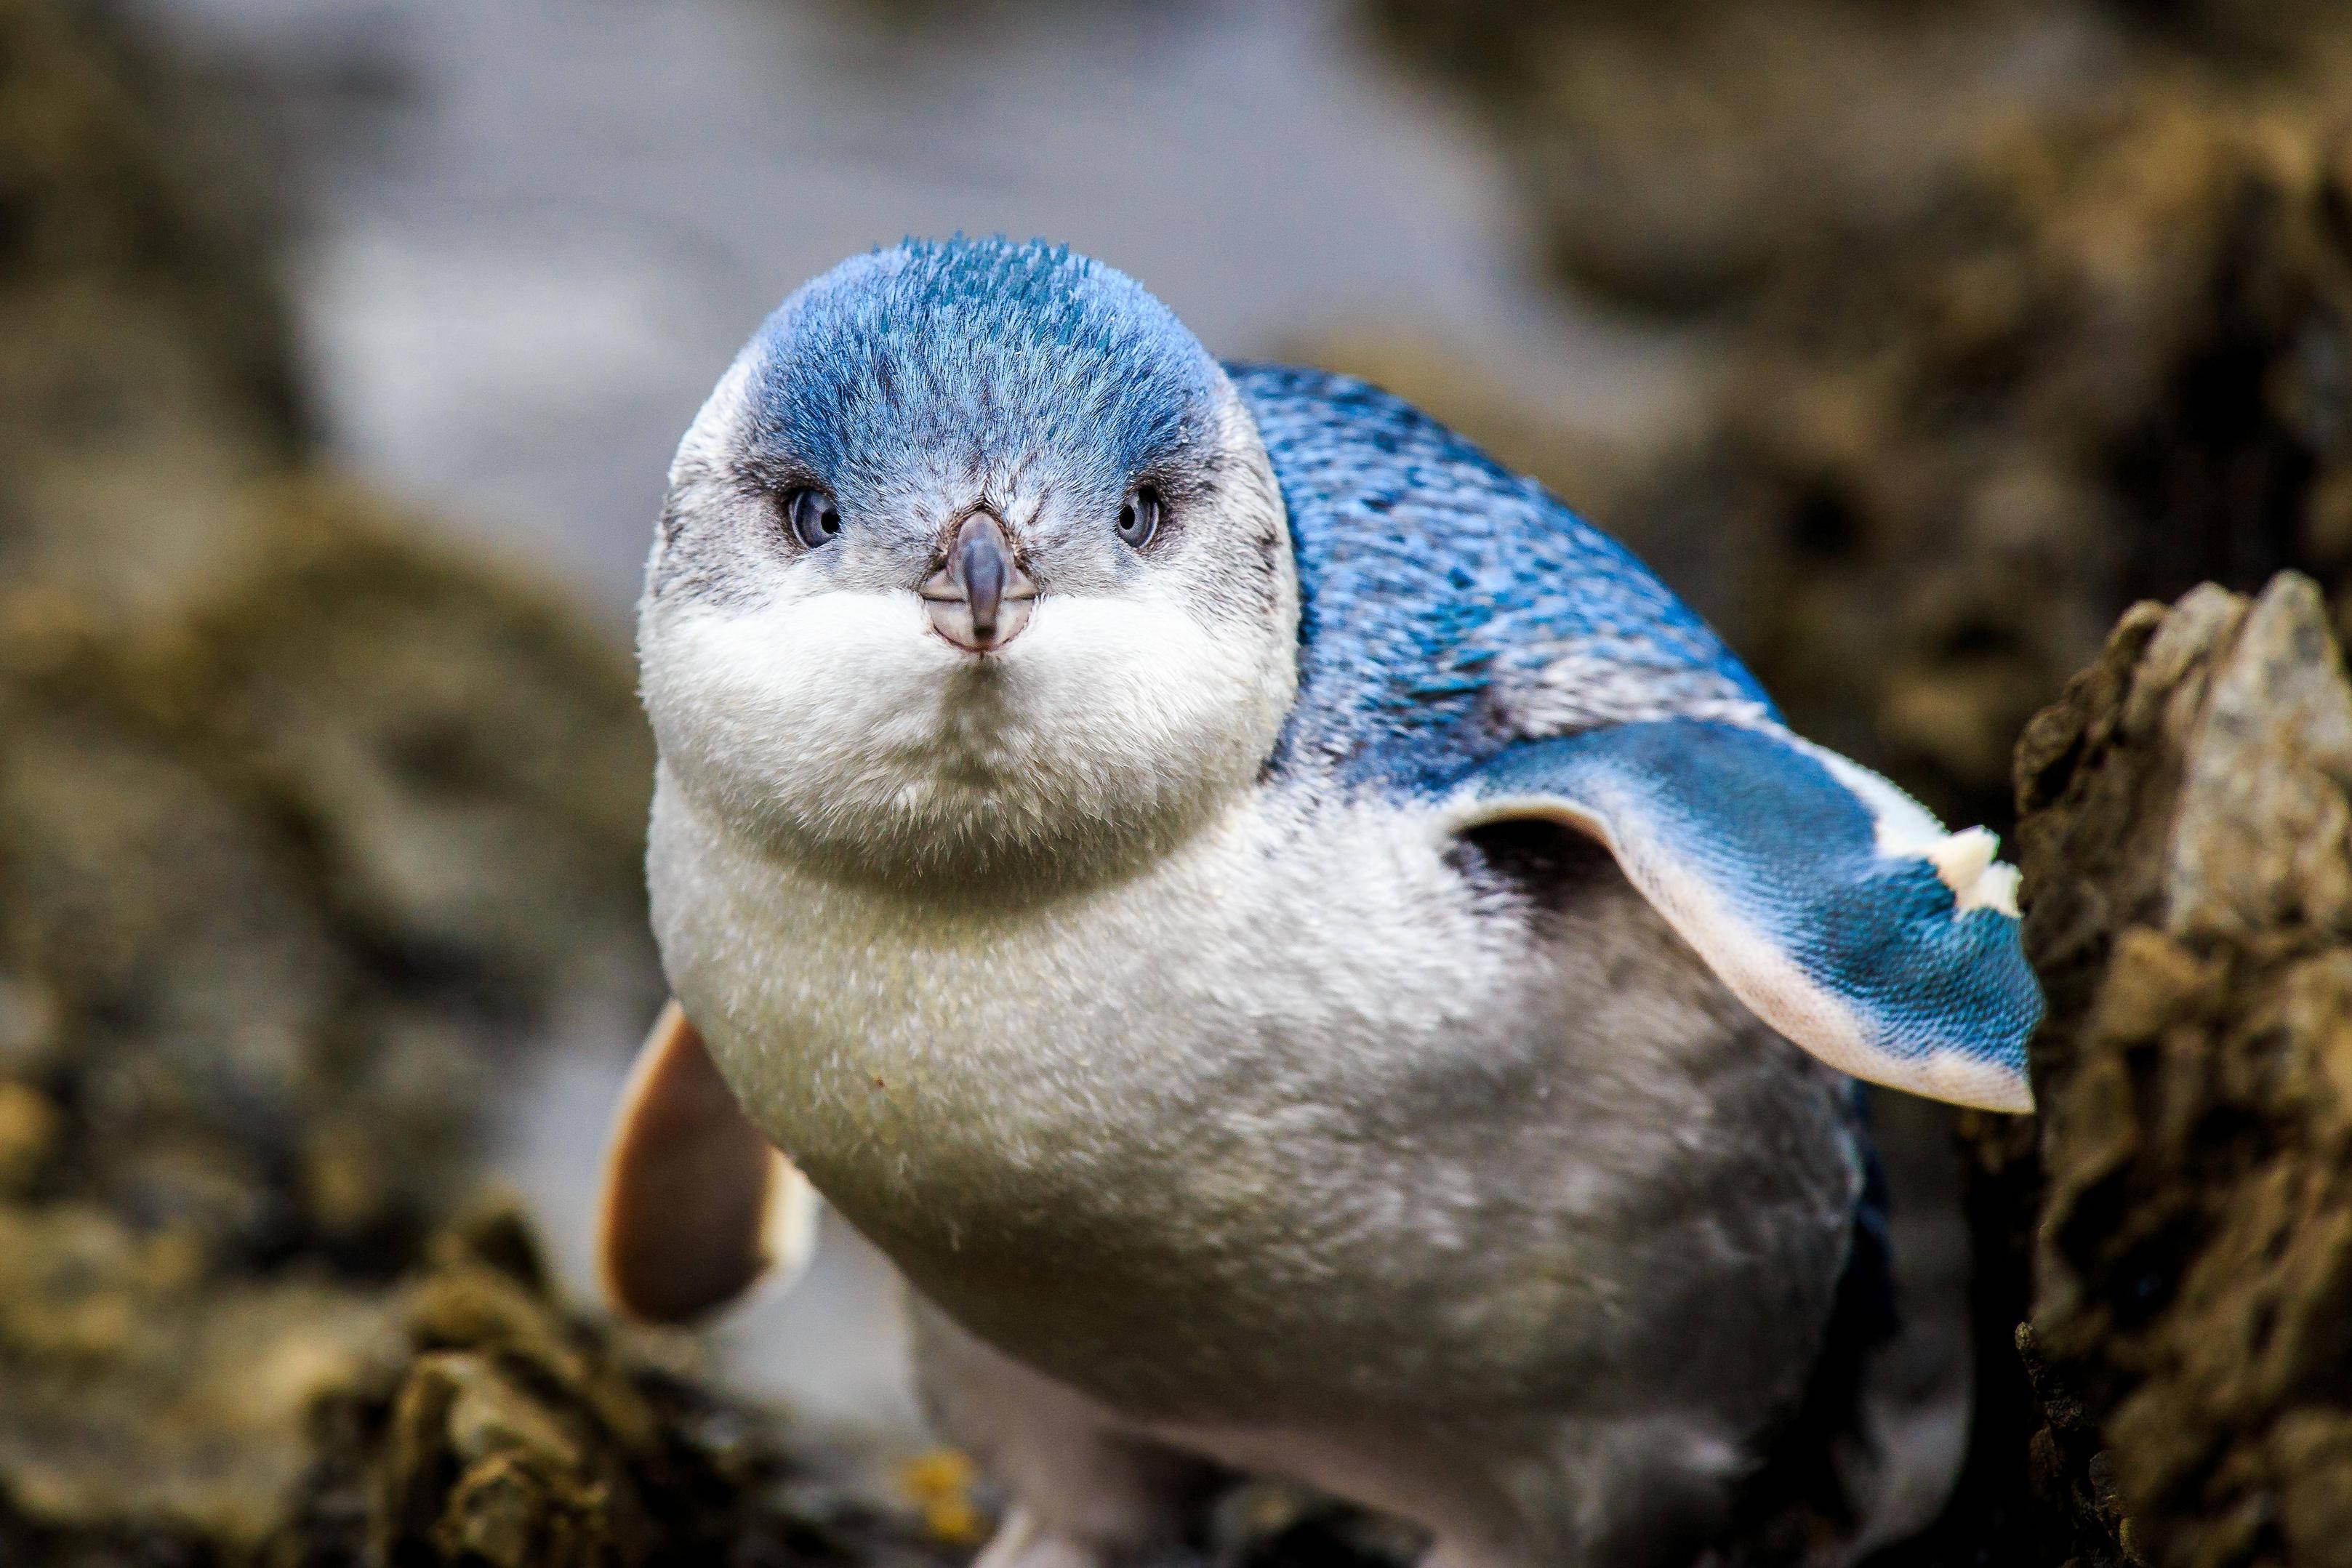 monday morning randomness - little blue penguins